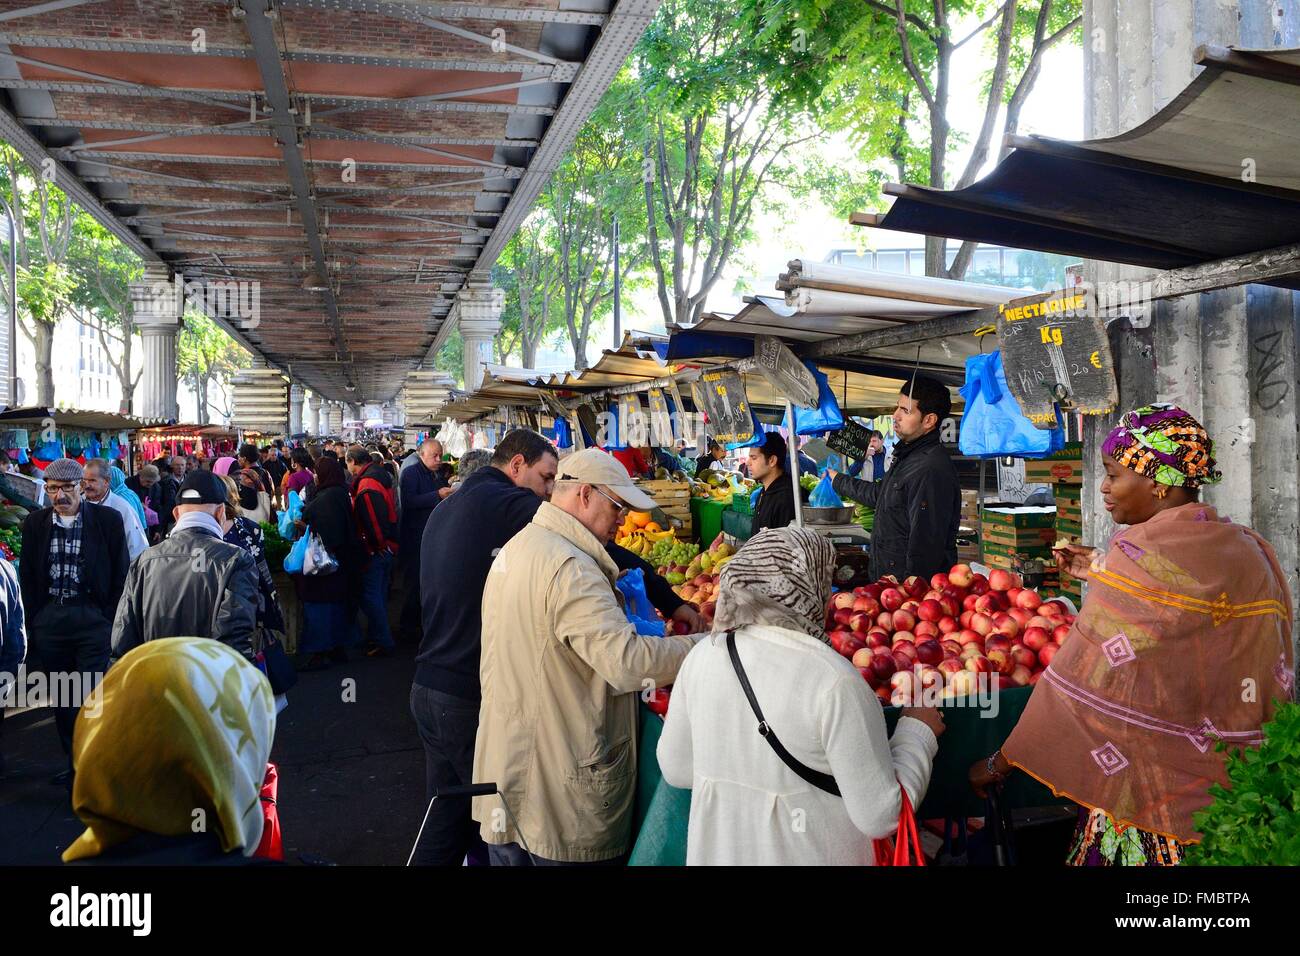 France, Paris, boulevard de la Chapelle, Barbes market under the elevated  metro Barbes-Rochechouart Stock Photo - Alamy